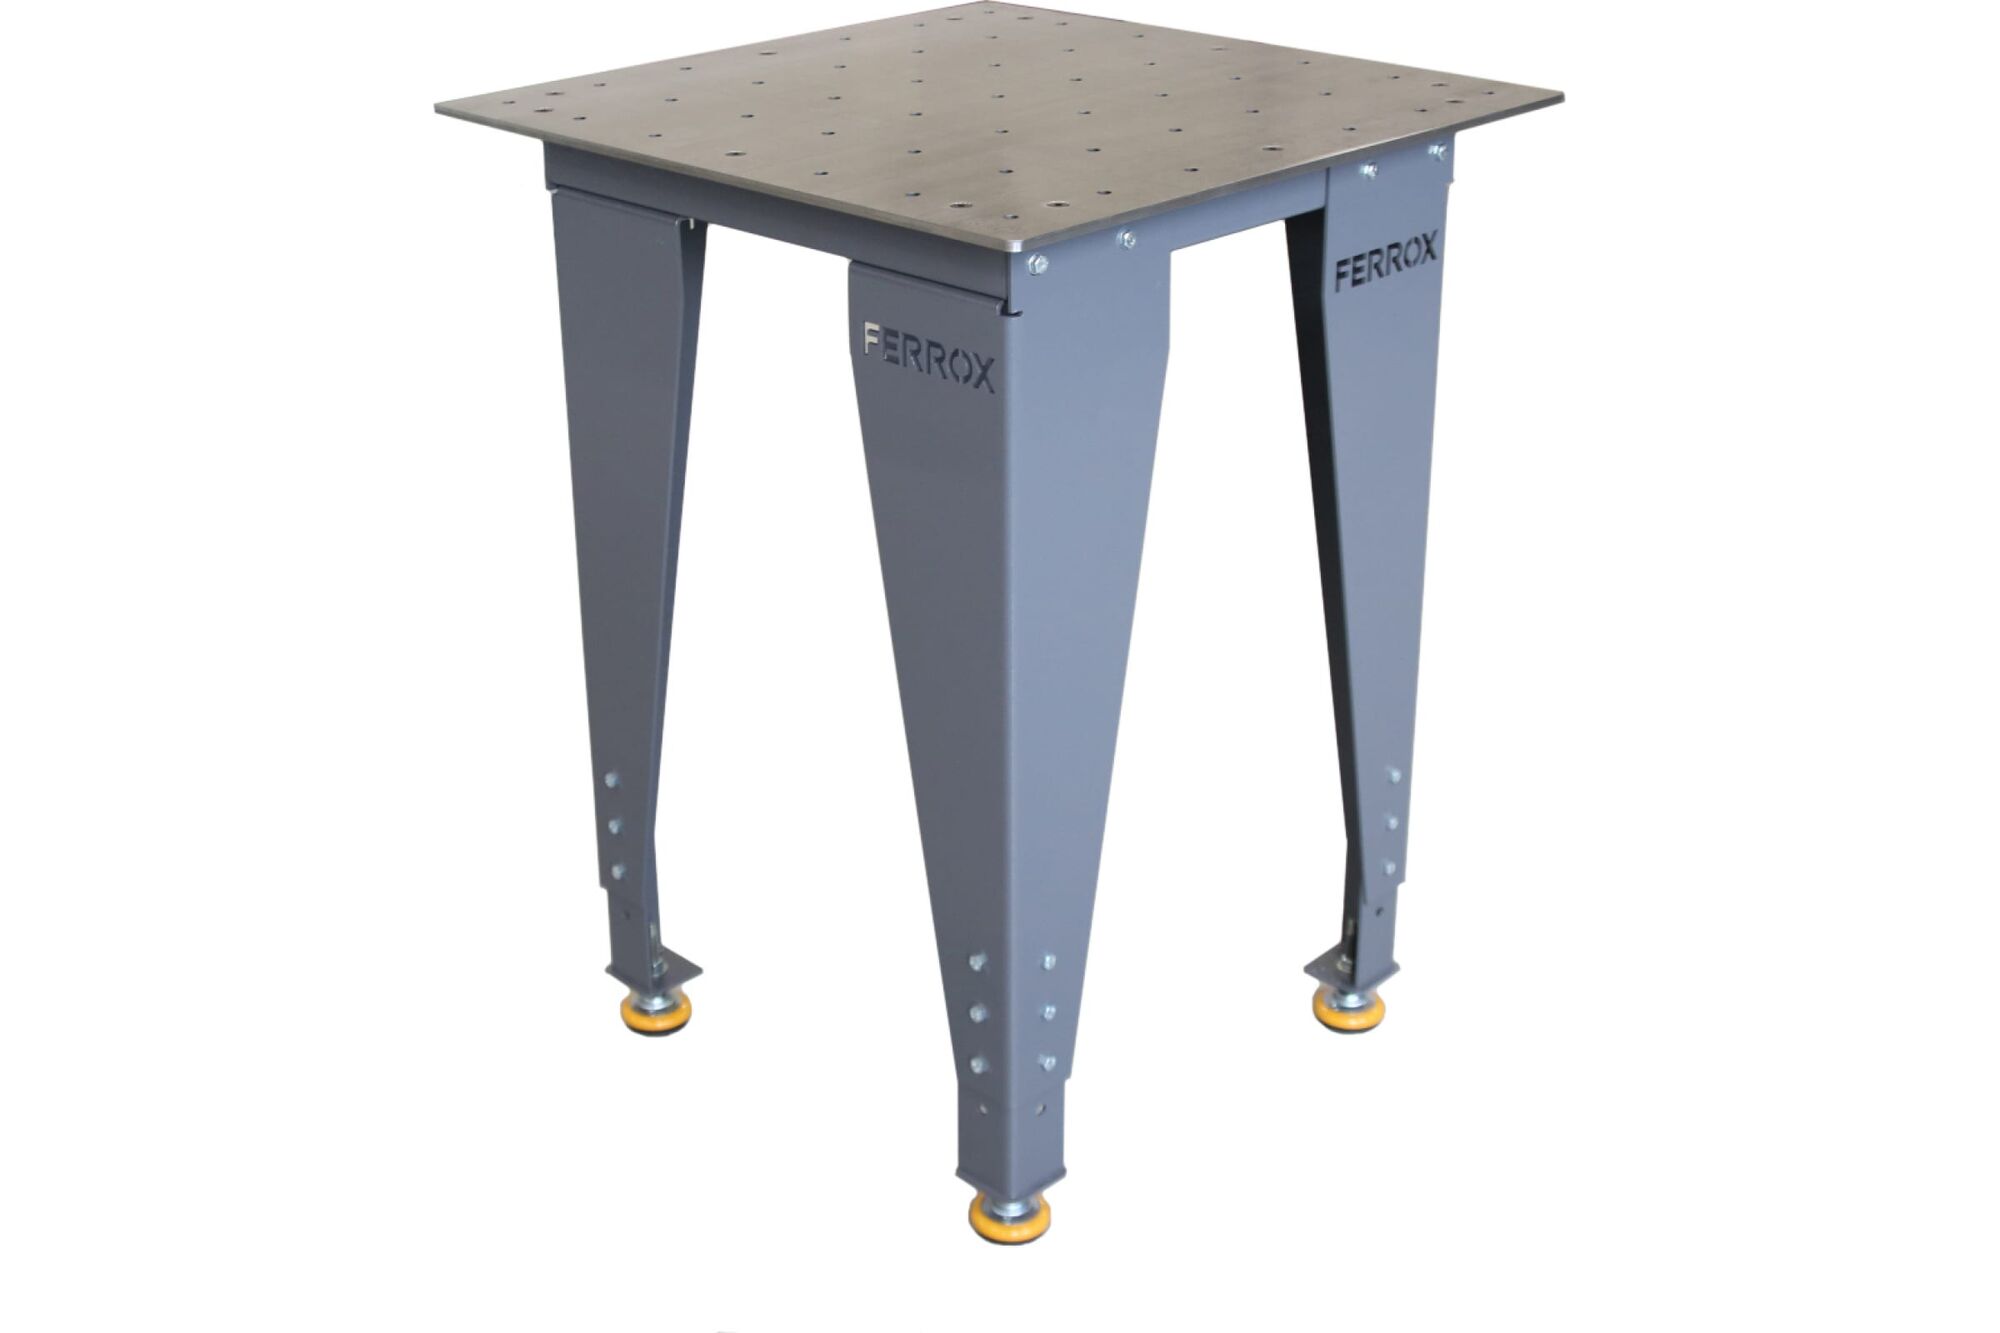 Слесарно-сборочный стол FERROX SMS8 700х700 мм (d16), марка 55188